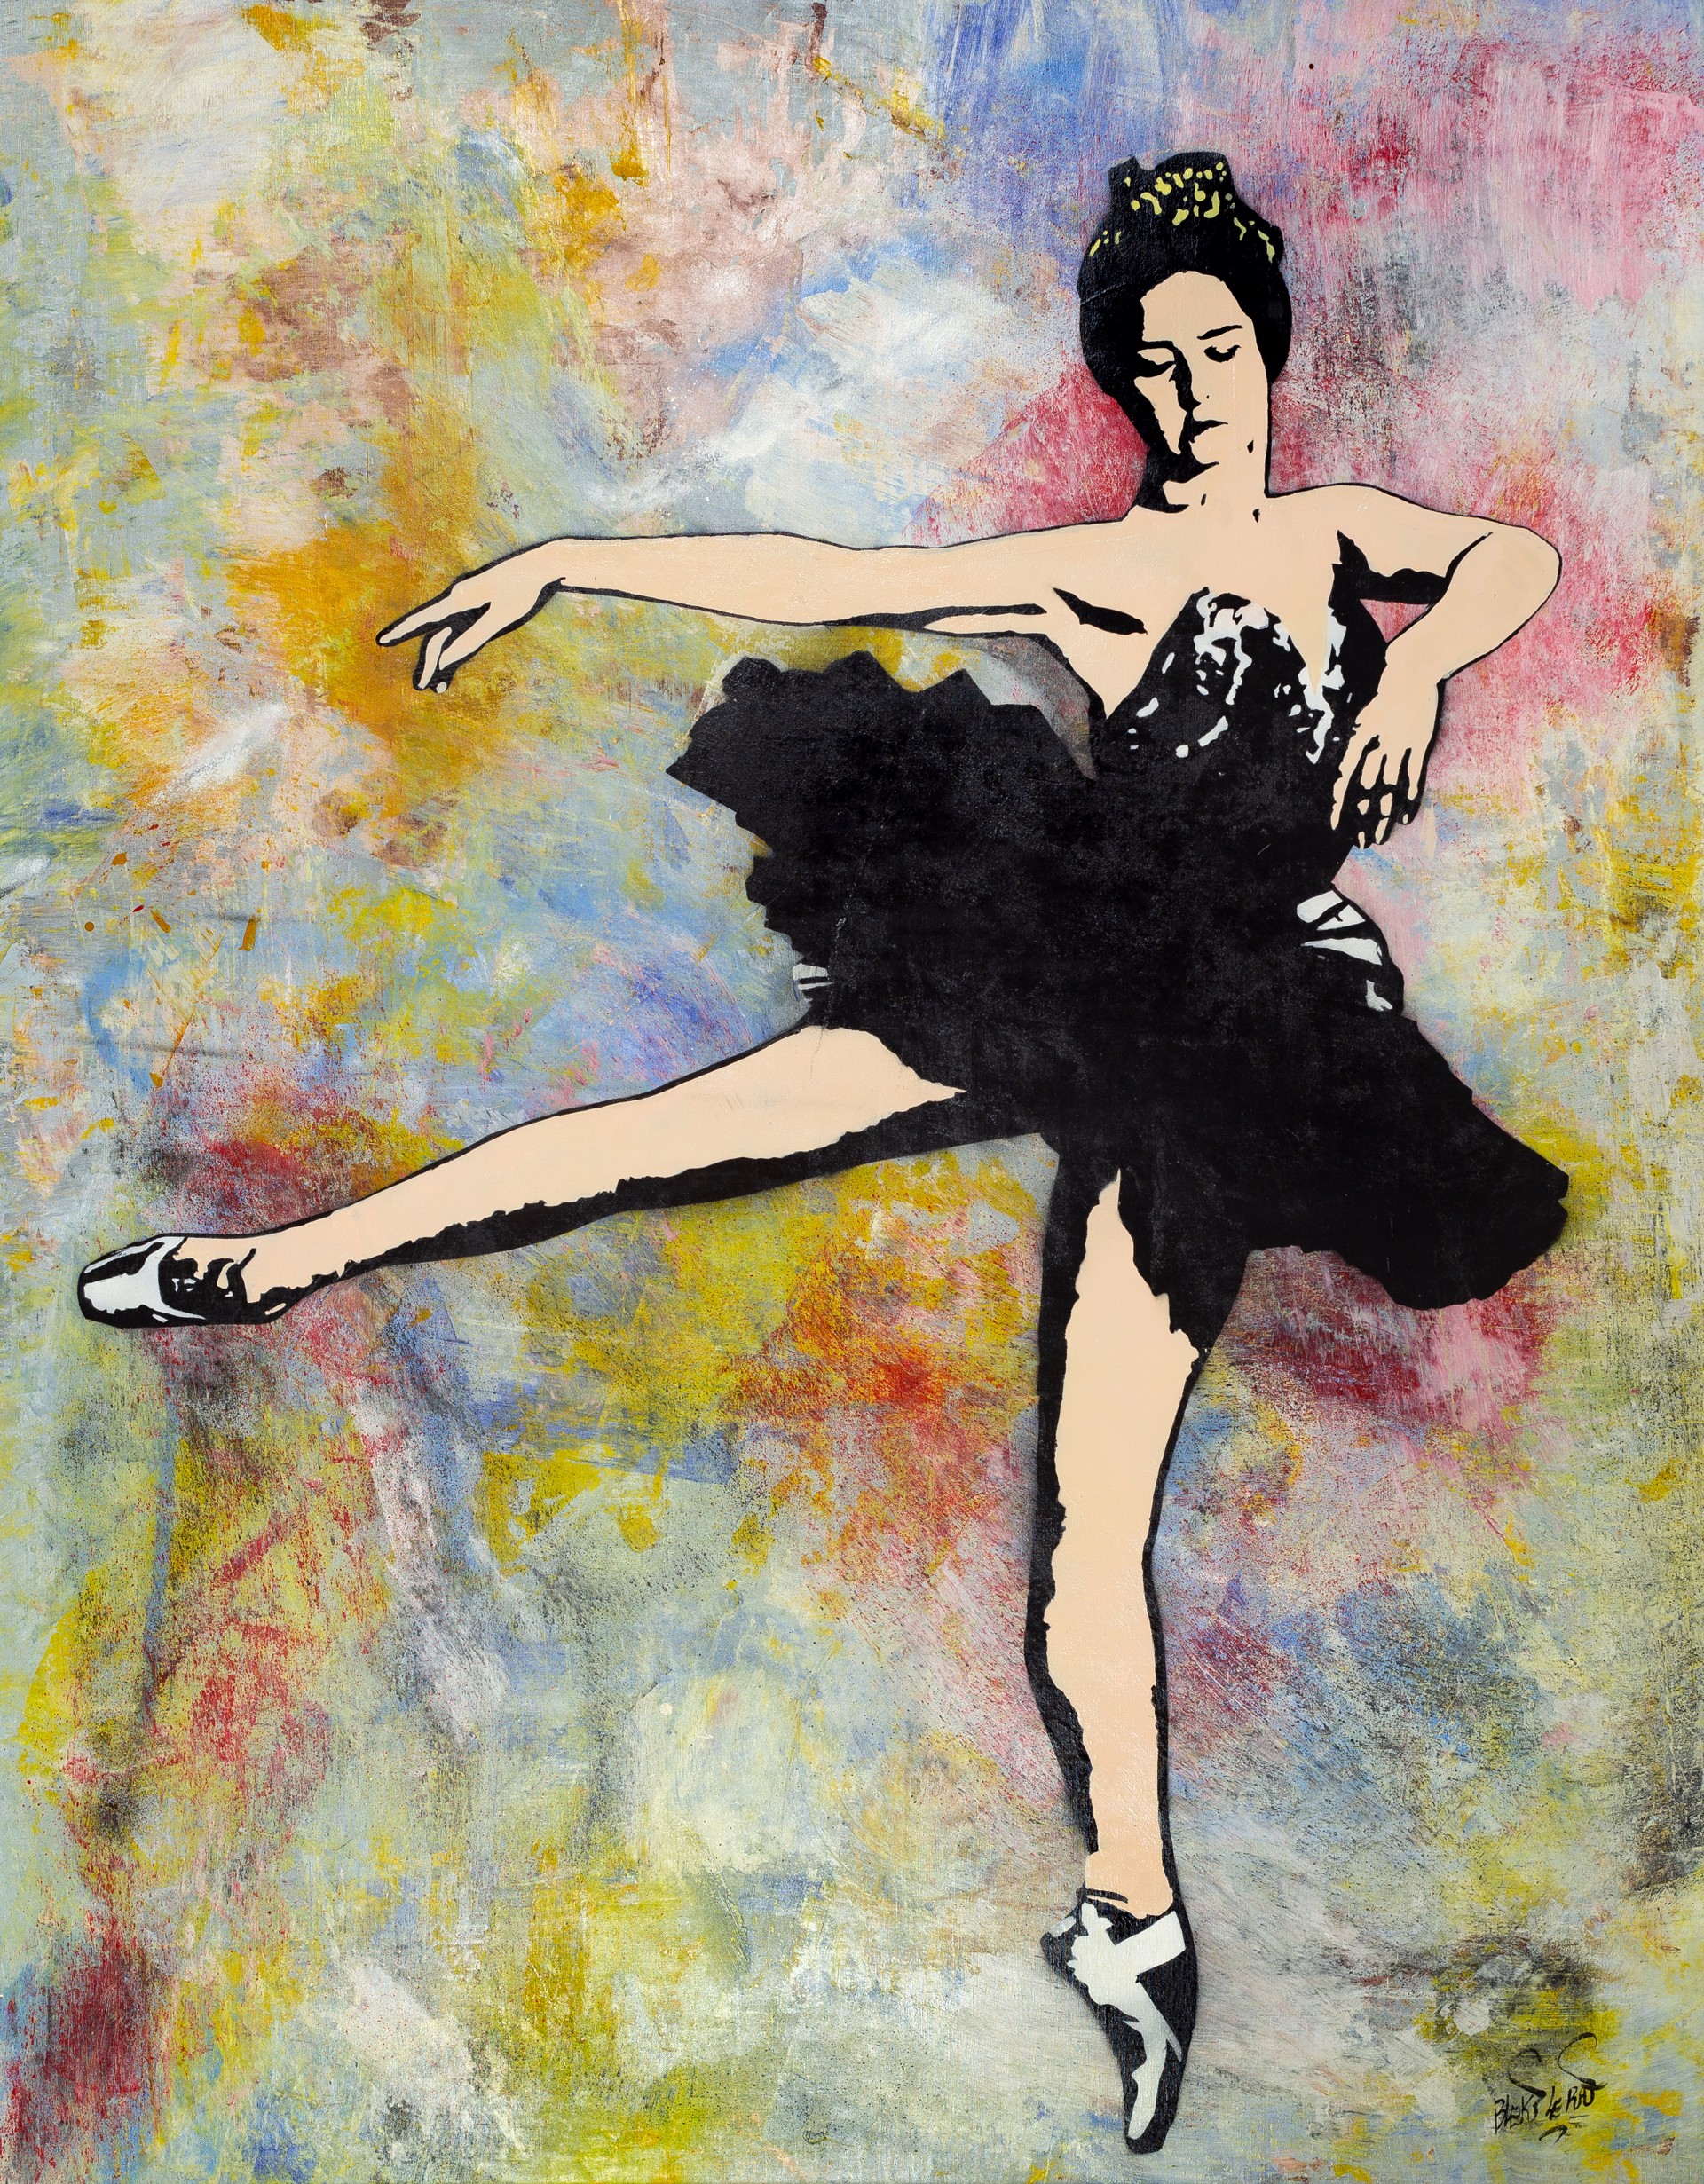 Danseuse Pastell by Blek le Rat